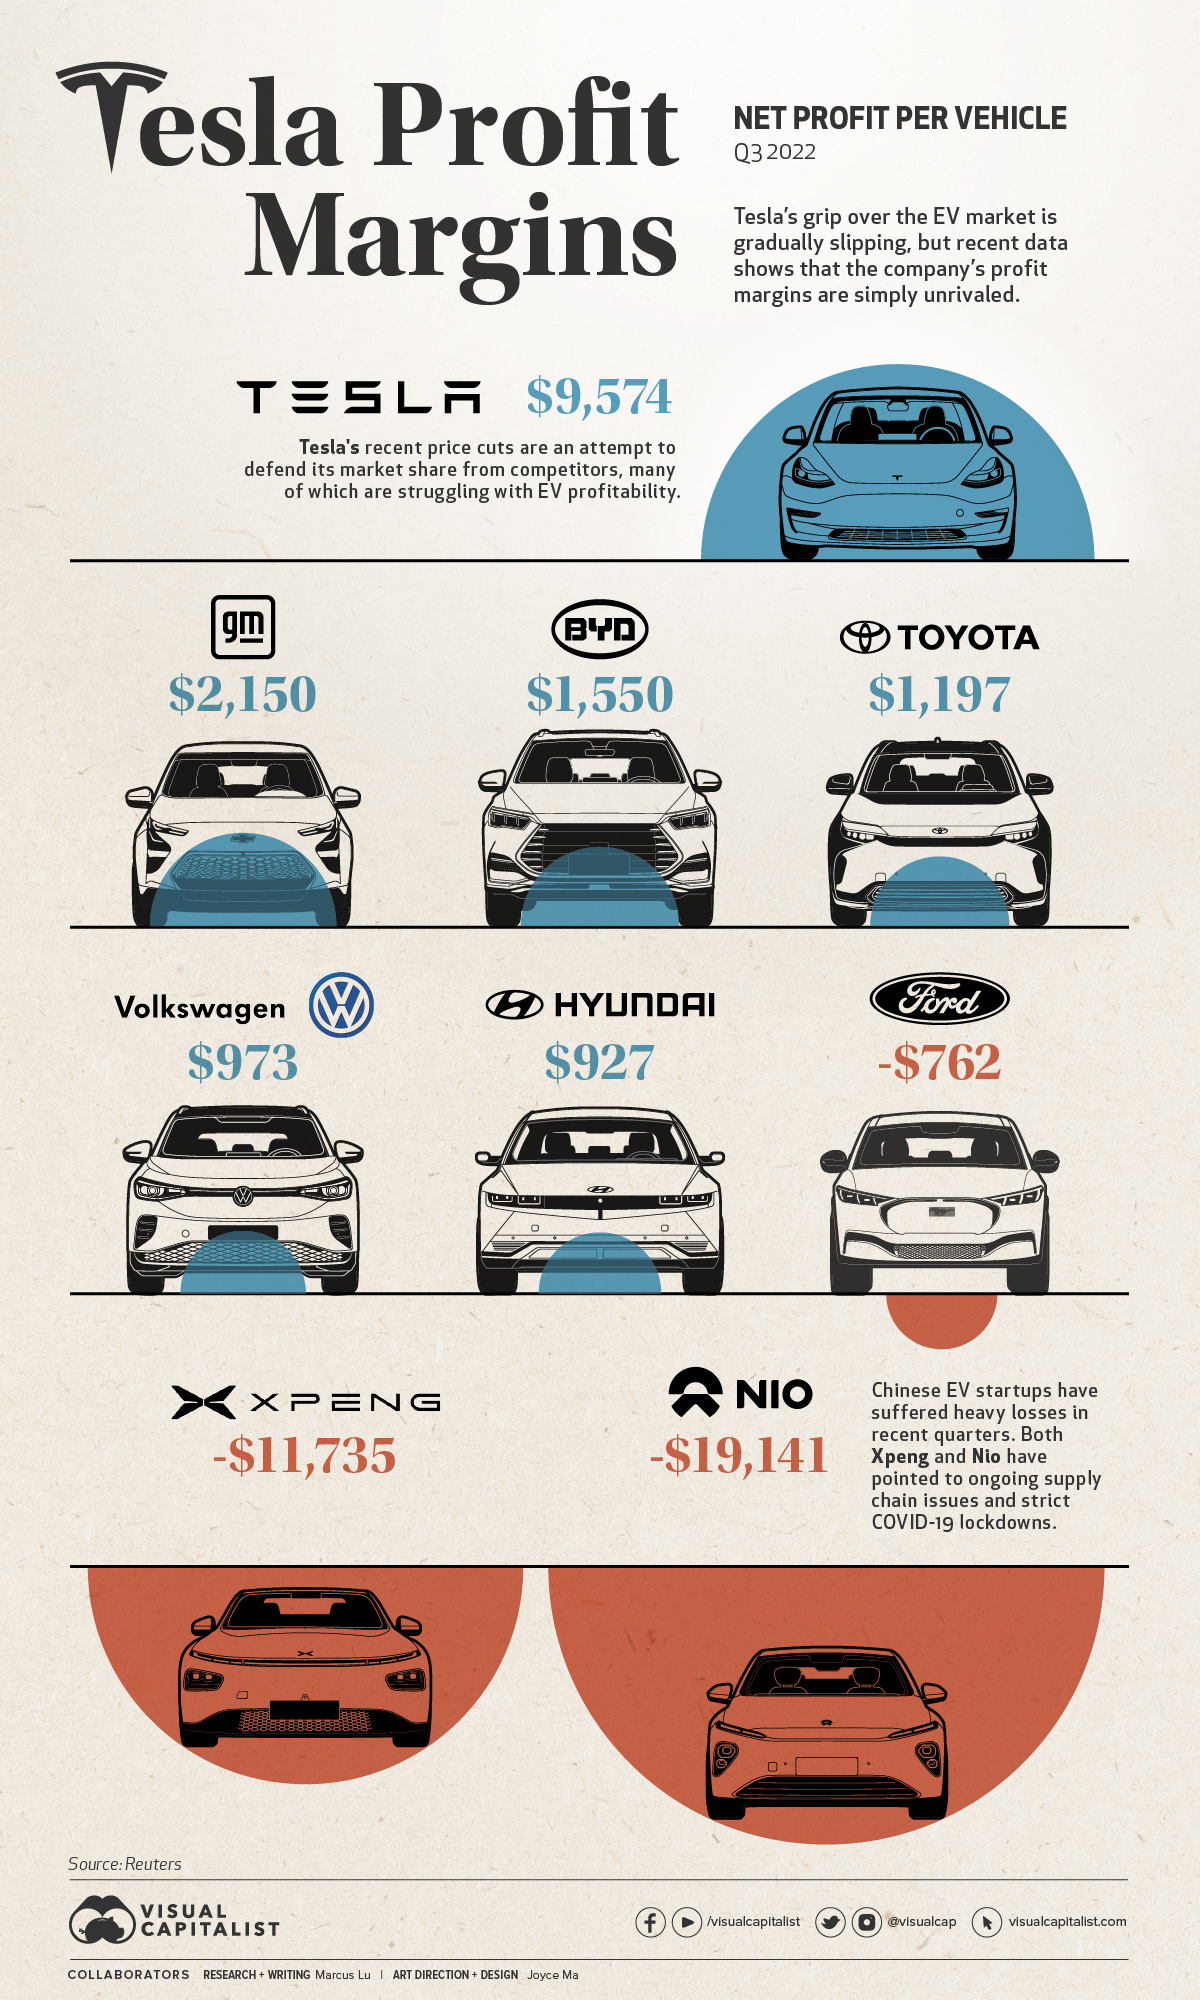 Tesla's profit margins per car